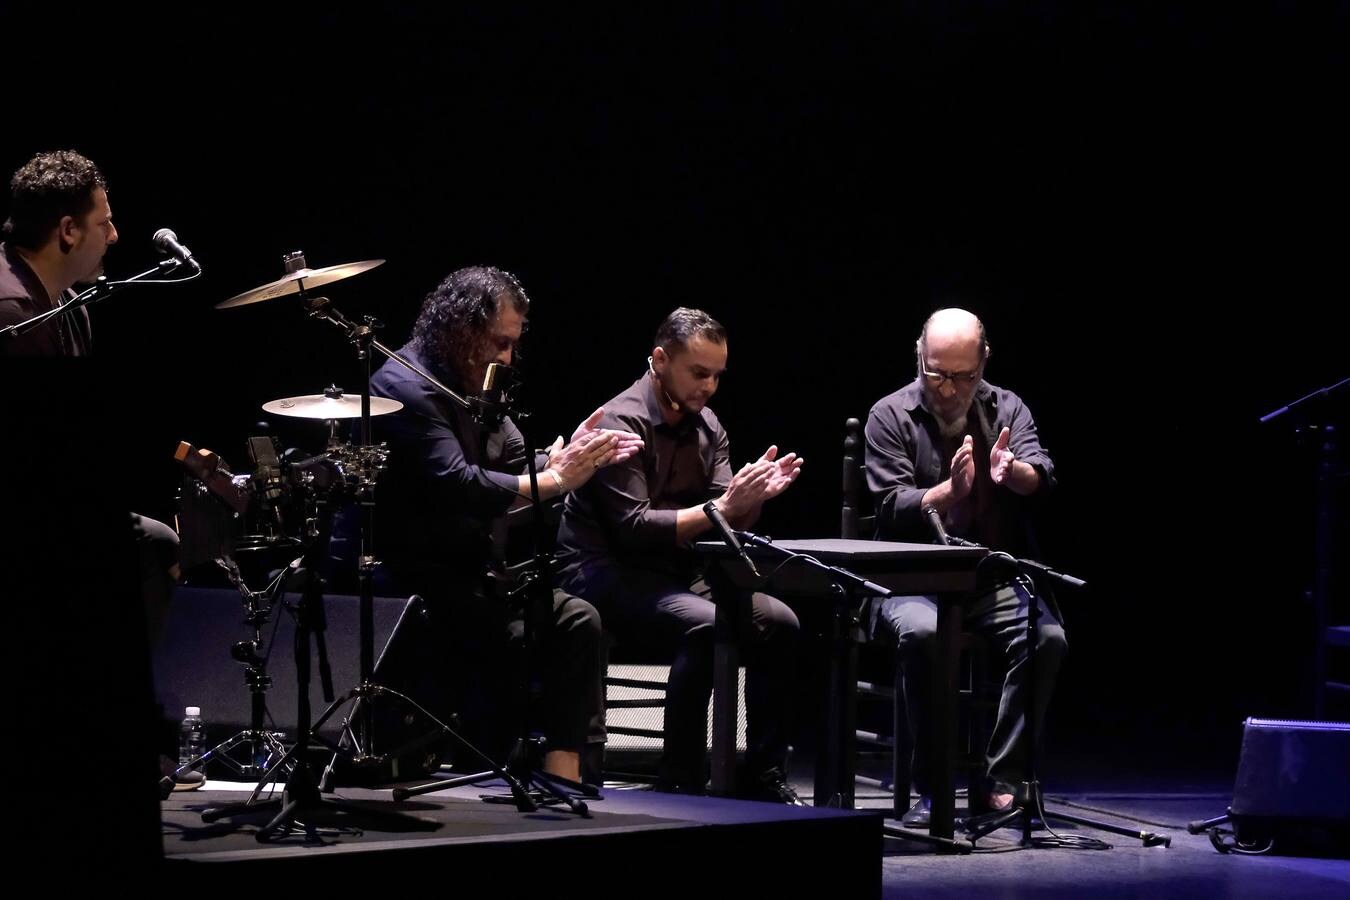 Bienal del Flamenco 2020: El Pele vuelve a demostrar cómo canta un maestro